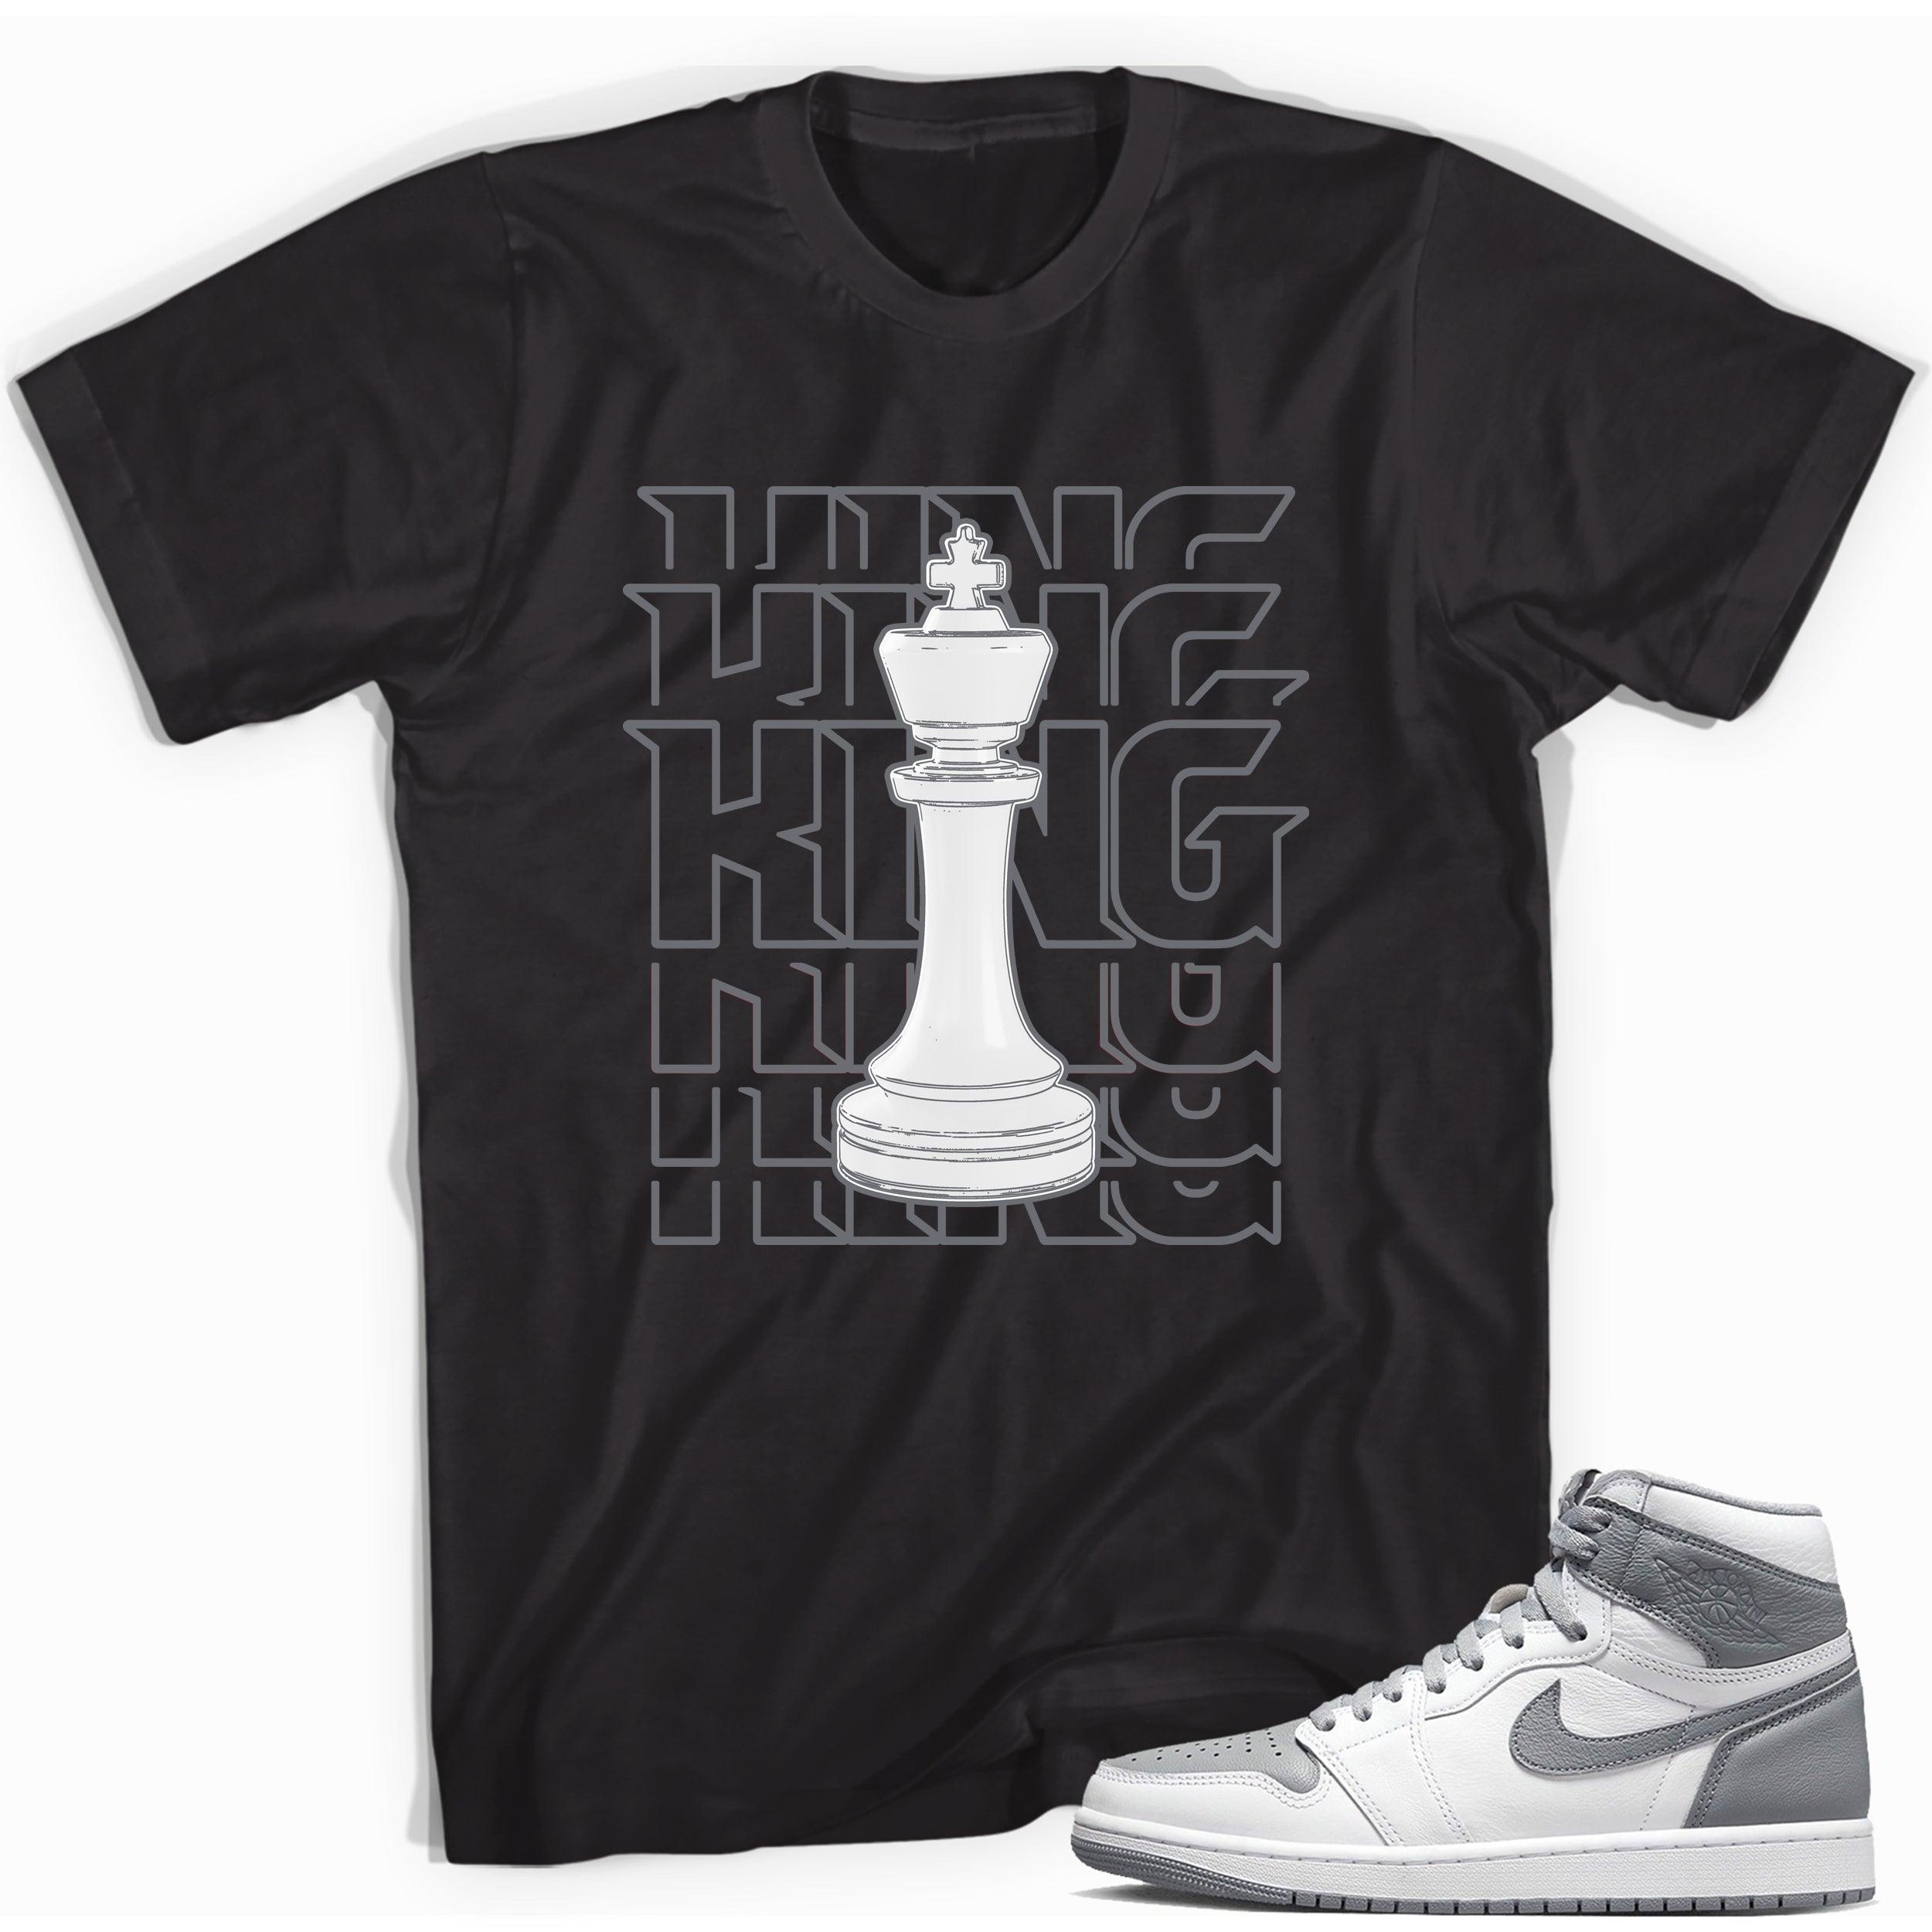 King Sneaker Tee for Jordan 1s photo